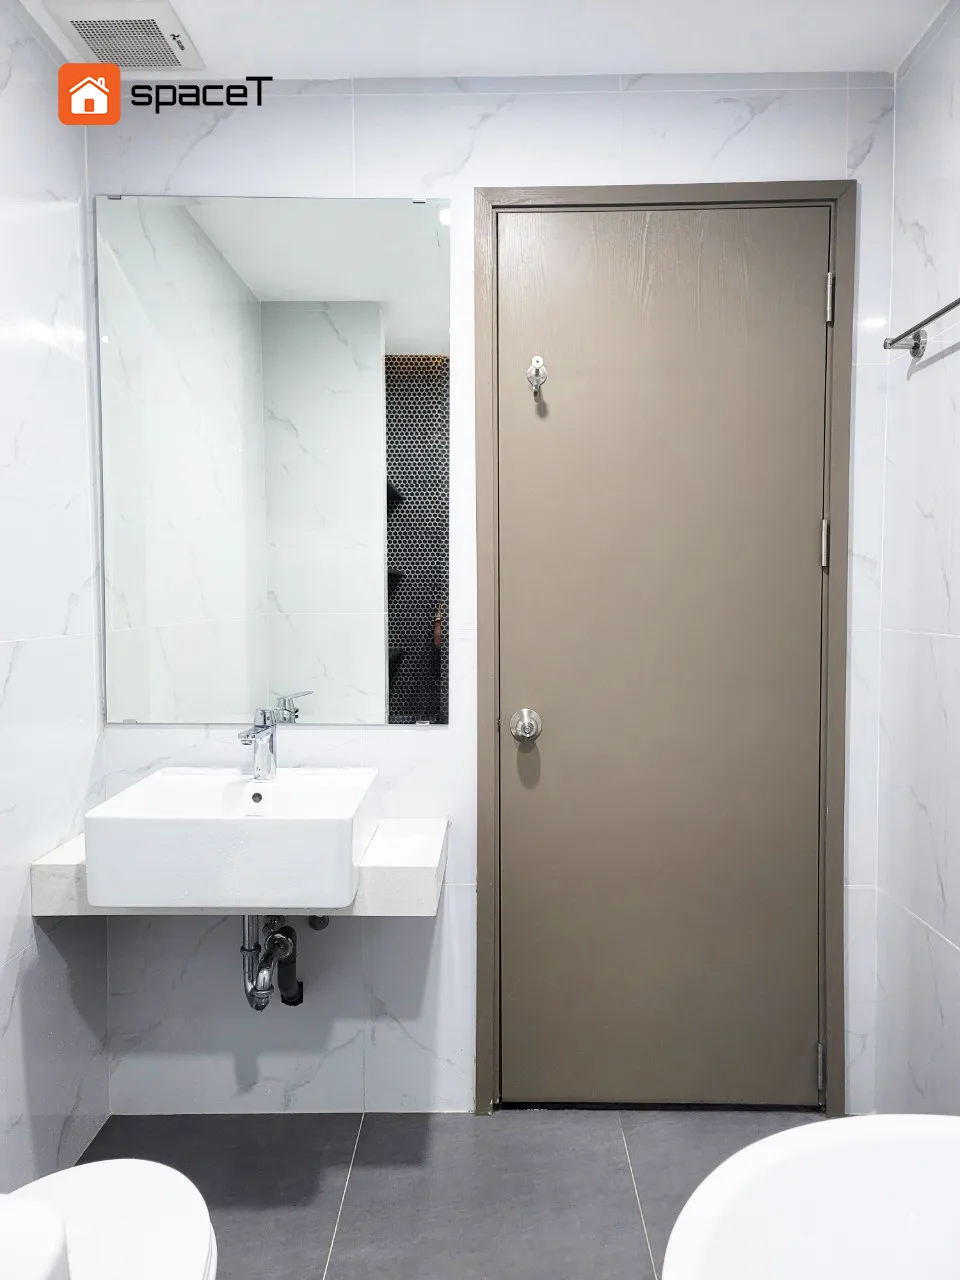 Công trình hoàn thiện nội thất cho phòng tắm căn hộ Westgate Bình Chánh theo phong cách Scandinavian